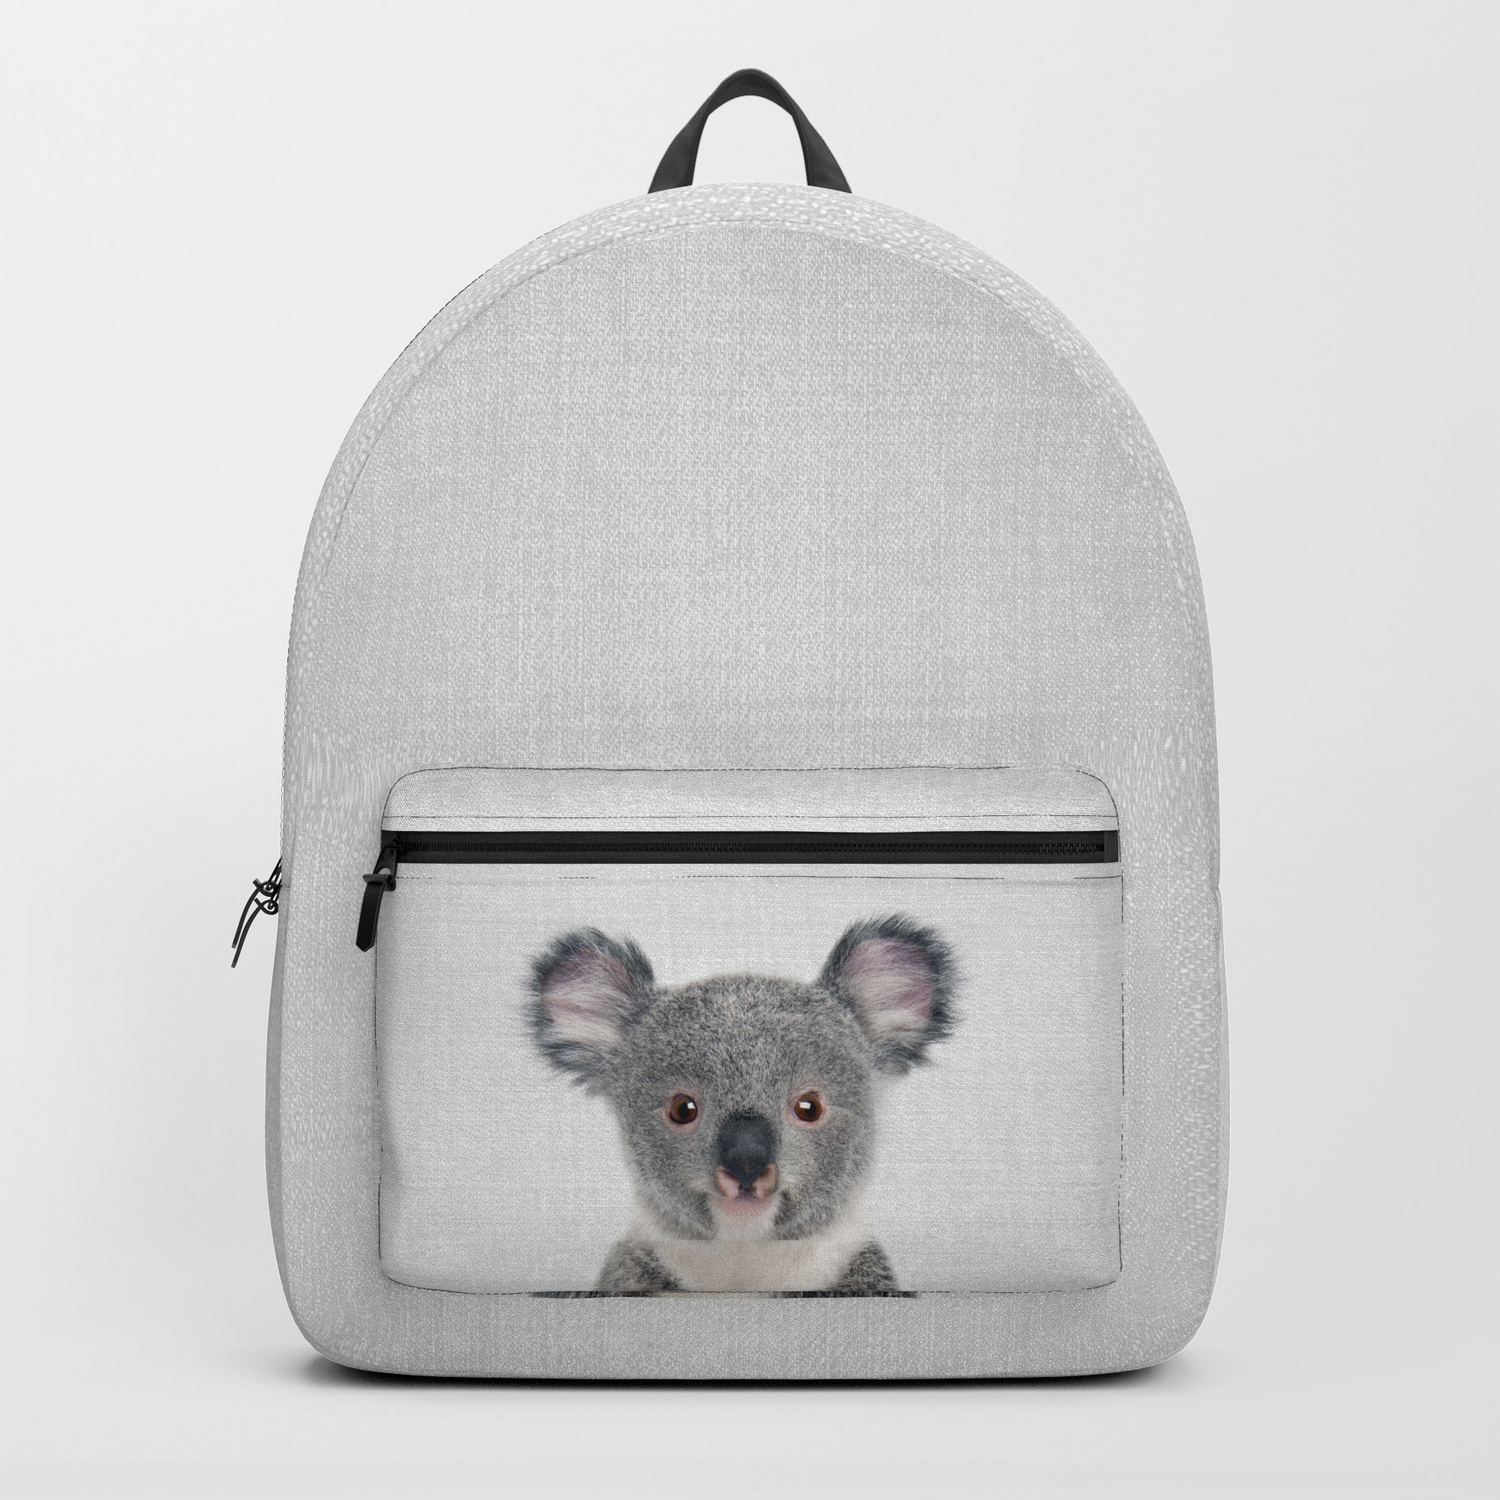 Pottery Barn Kids Koala Critter Large Gray Backpack New 